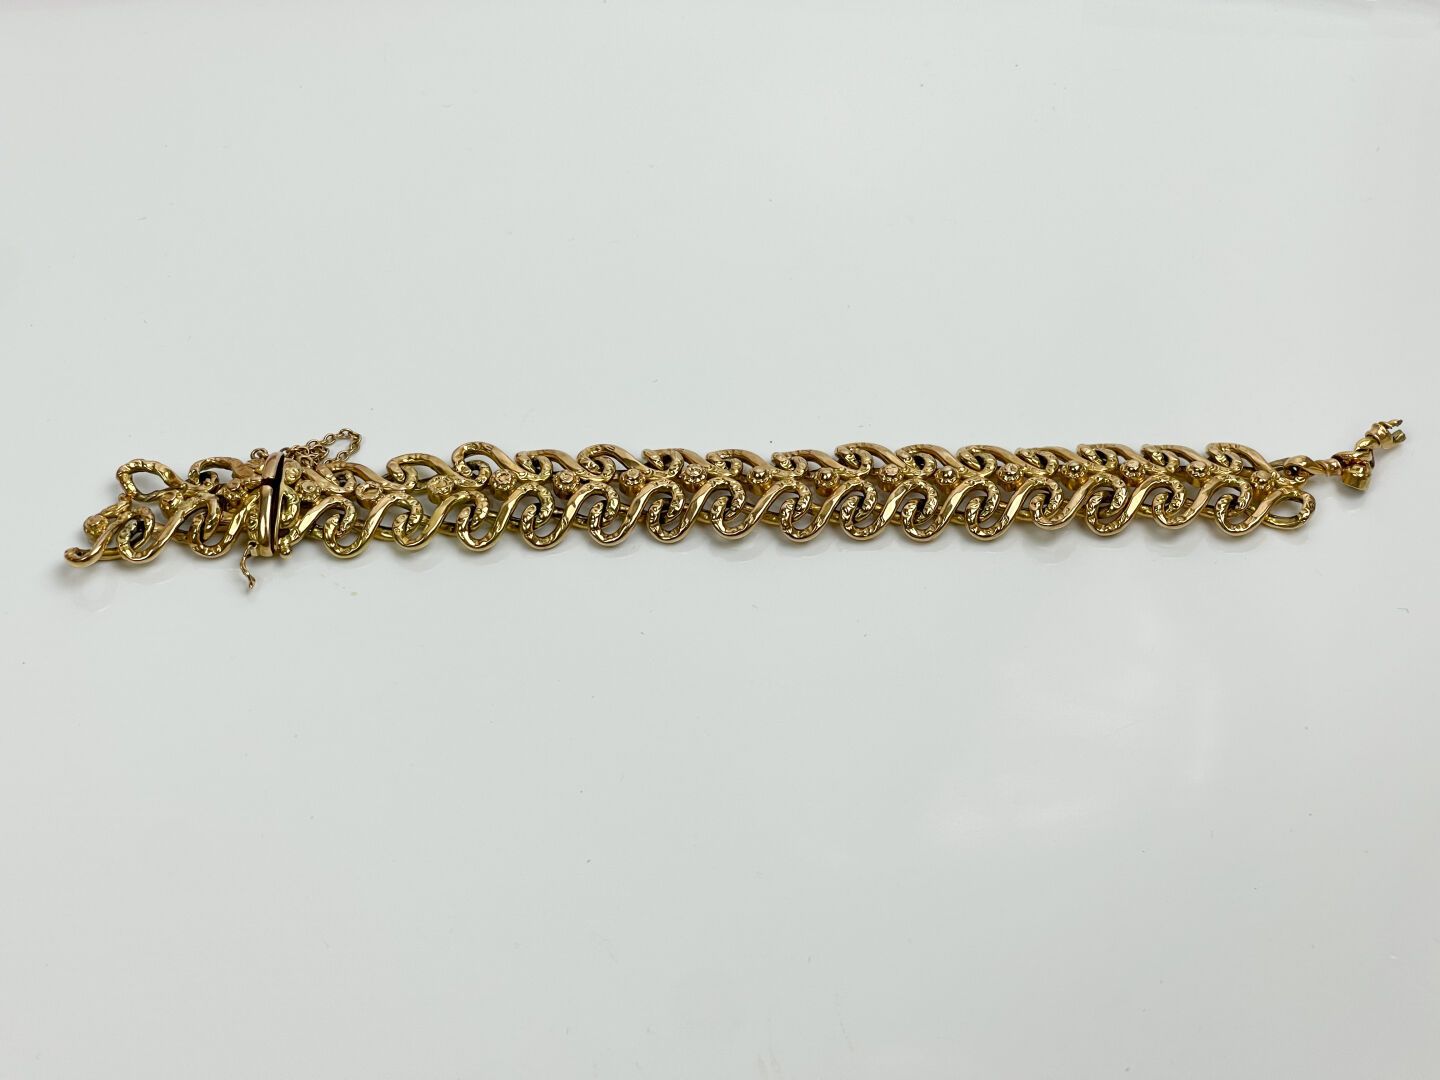 Null Bris de bracelet souple en or jaune 750 mil. 
Poids : 27,80 g